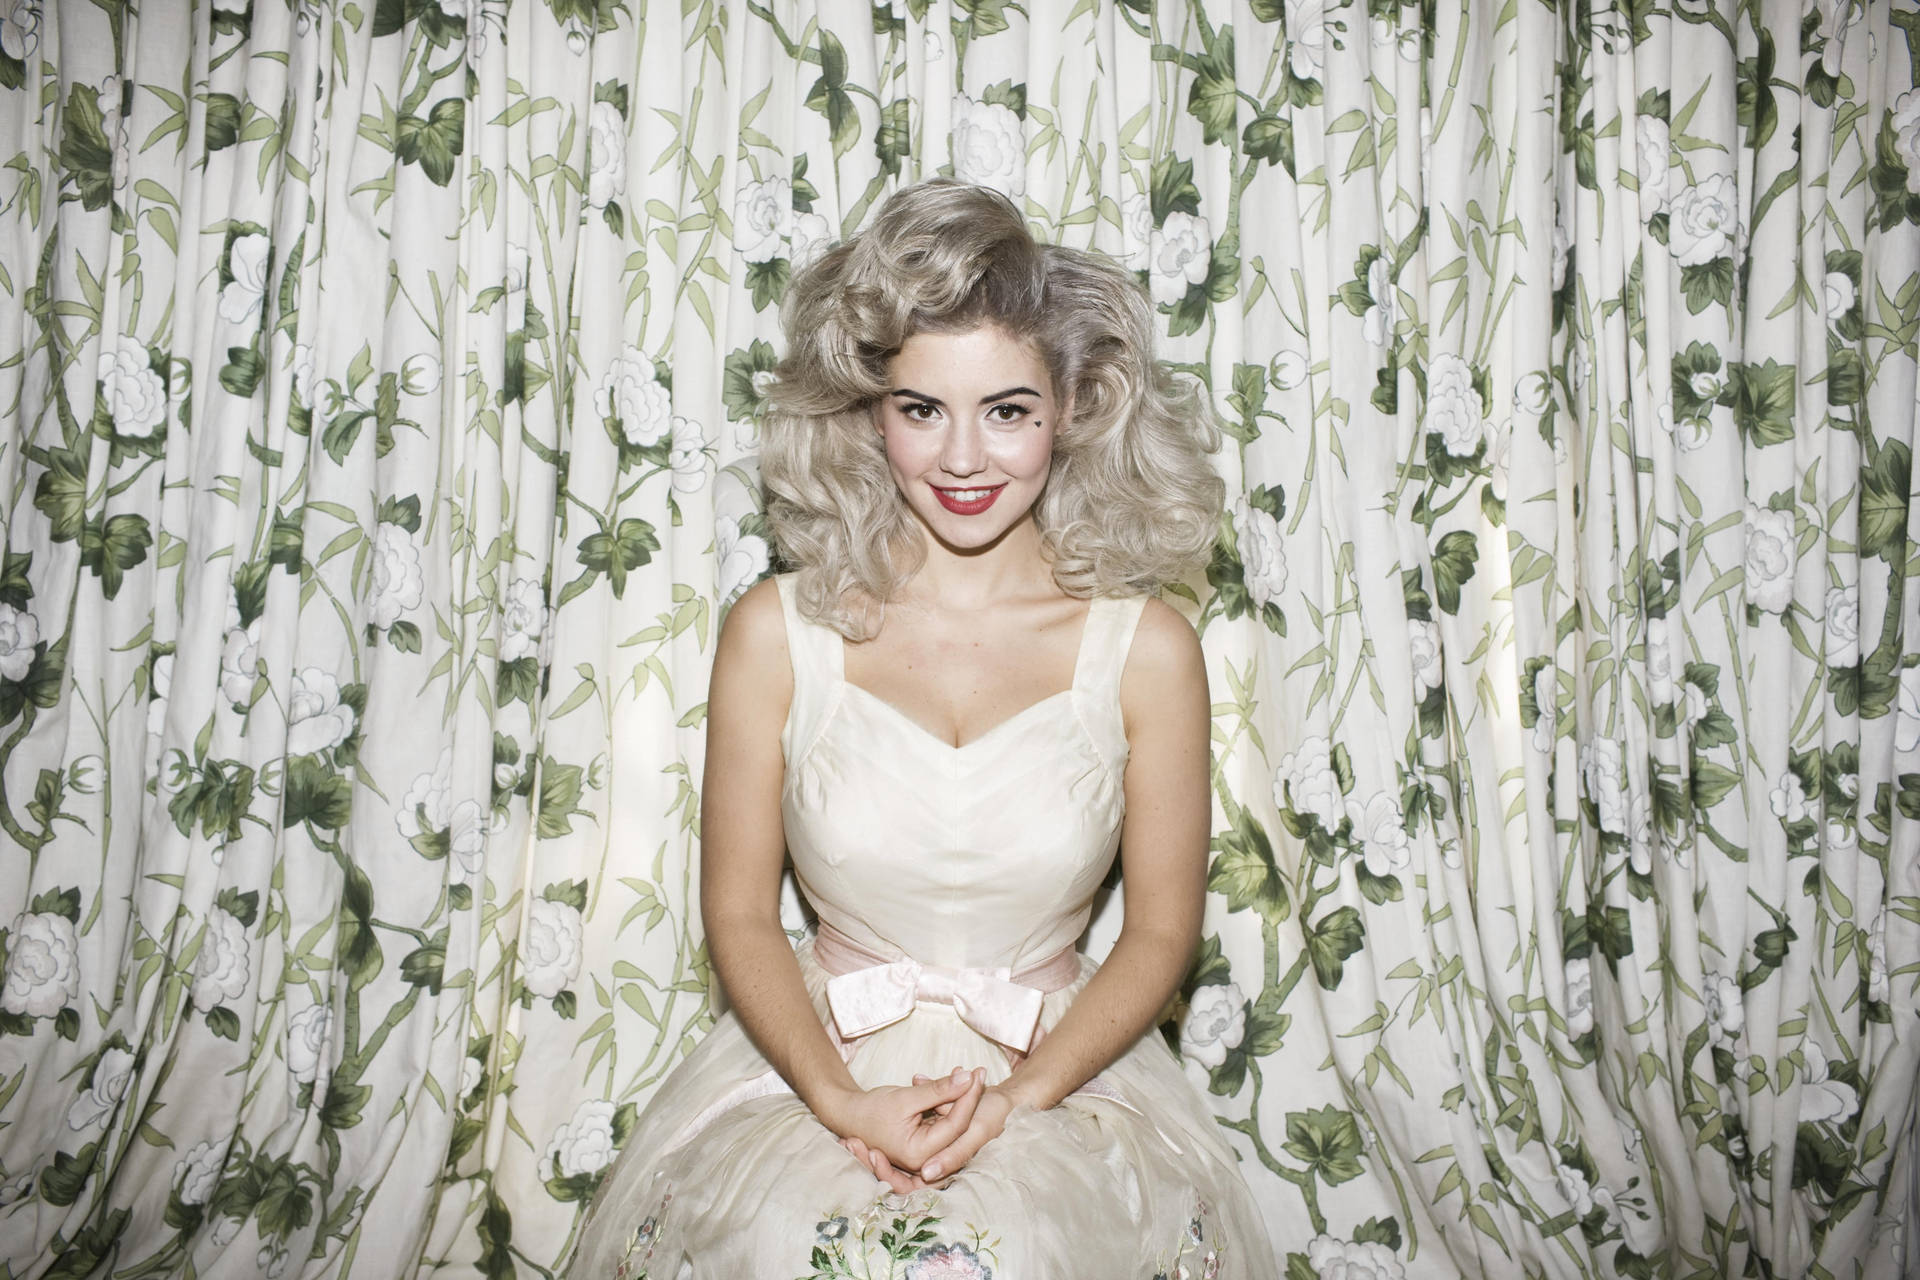 Marina and The Diamonds showcasing her stunning blonde look. Wallpaper